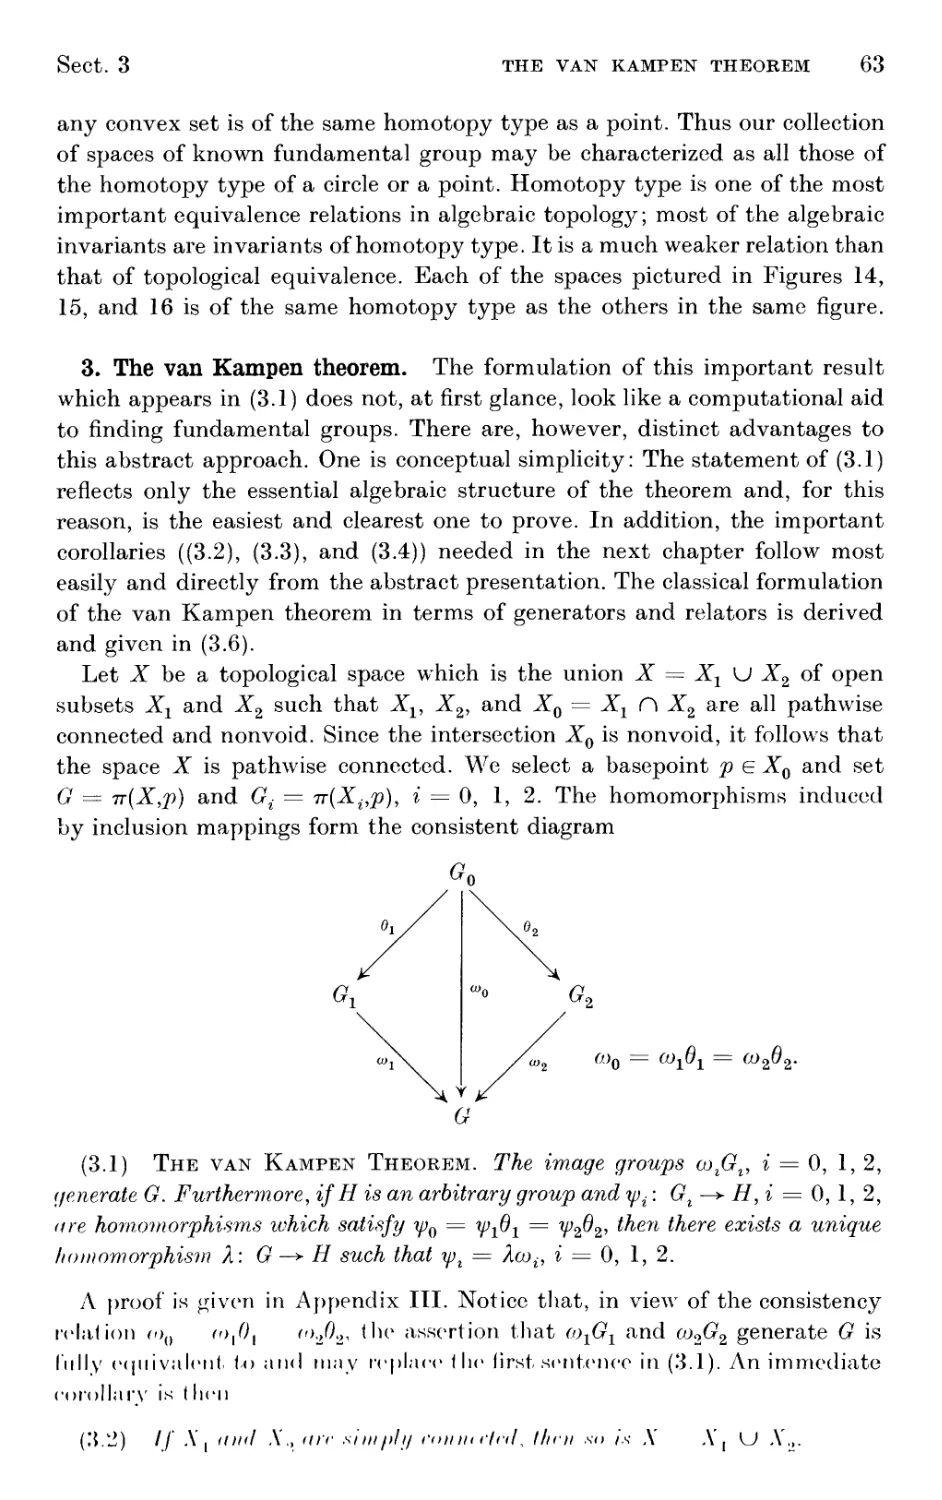 3. The van Kampen theorem